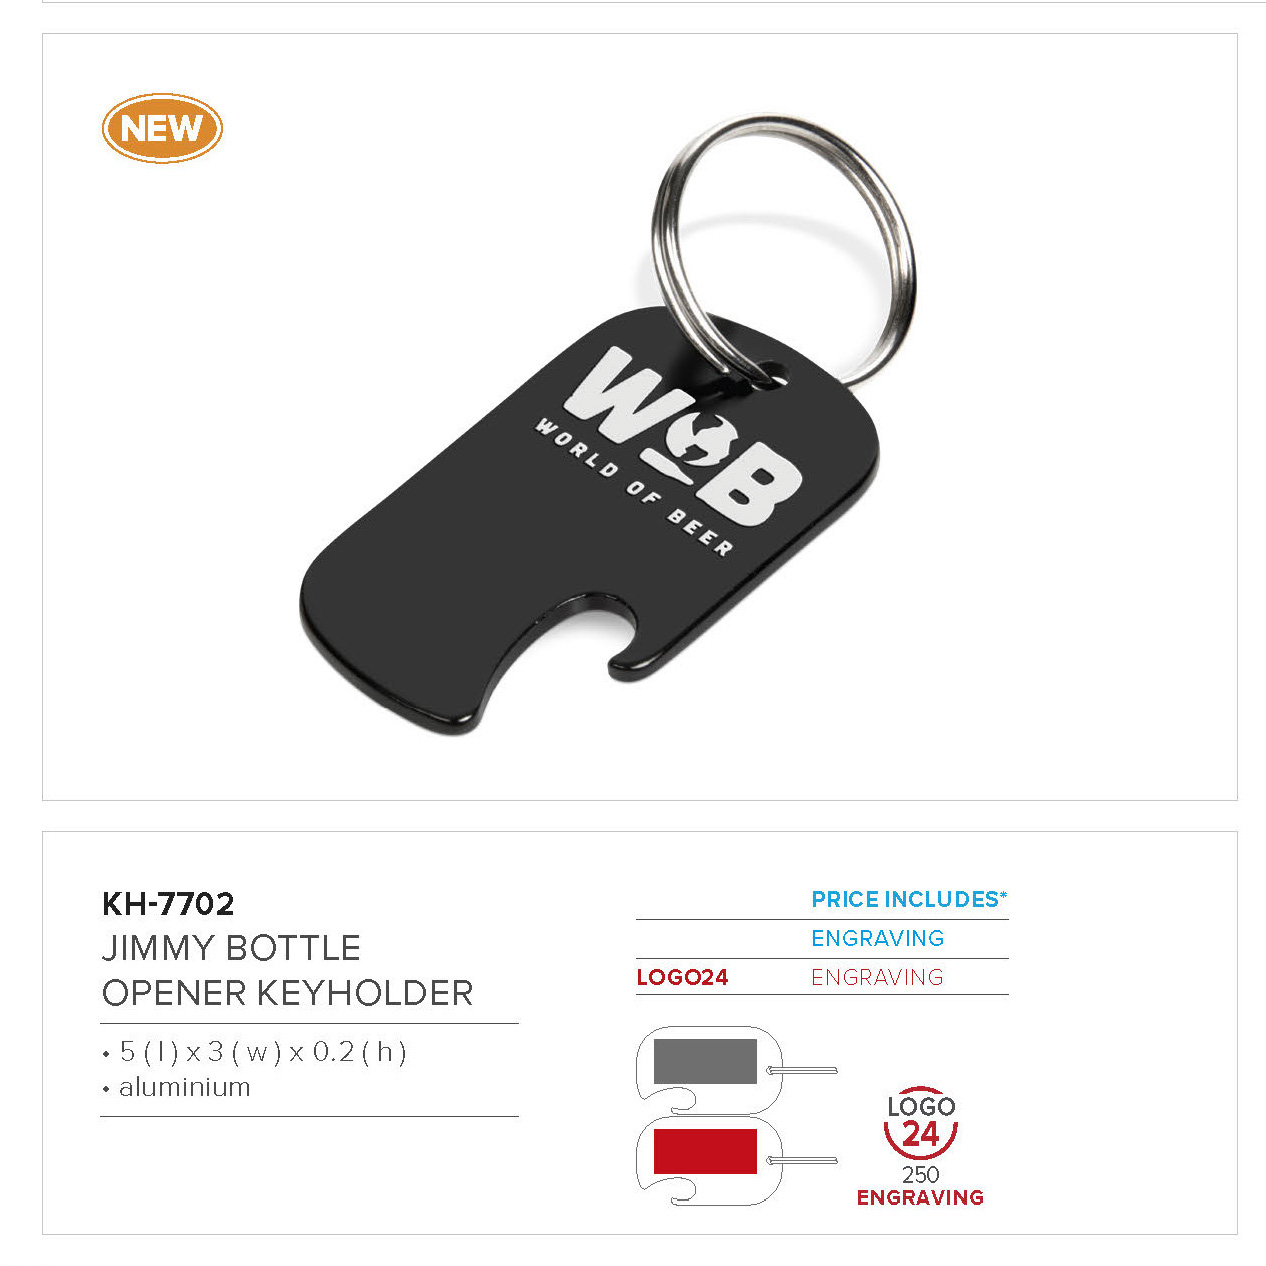 Jimmy Bottle Opener Keyholder